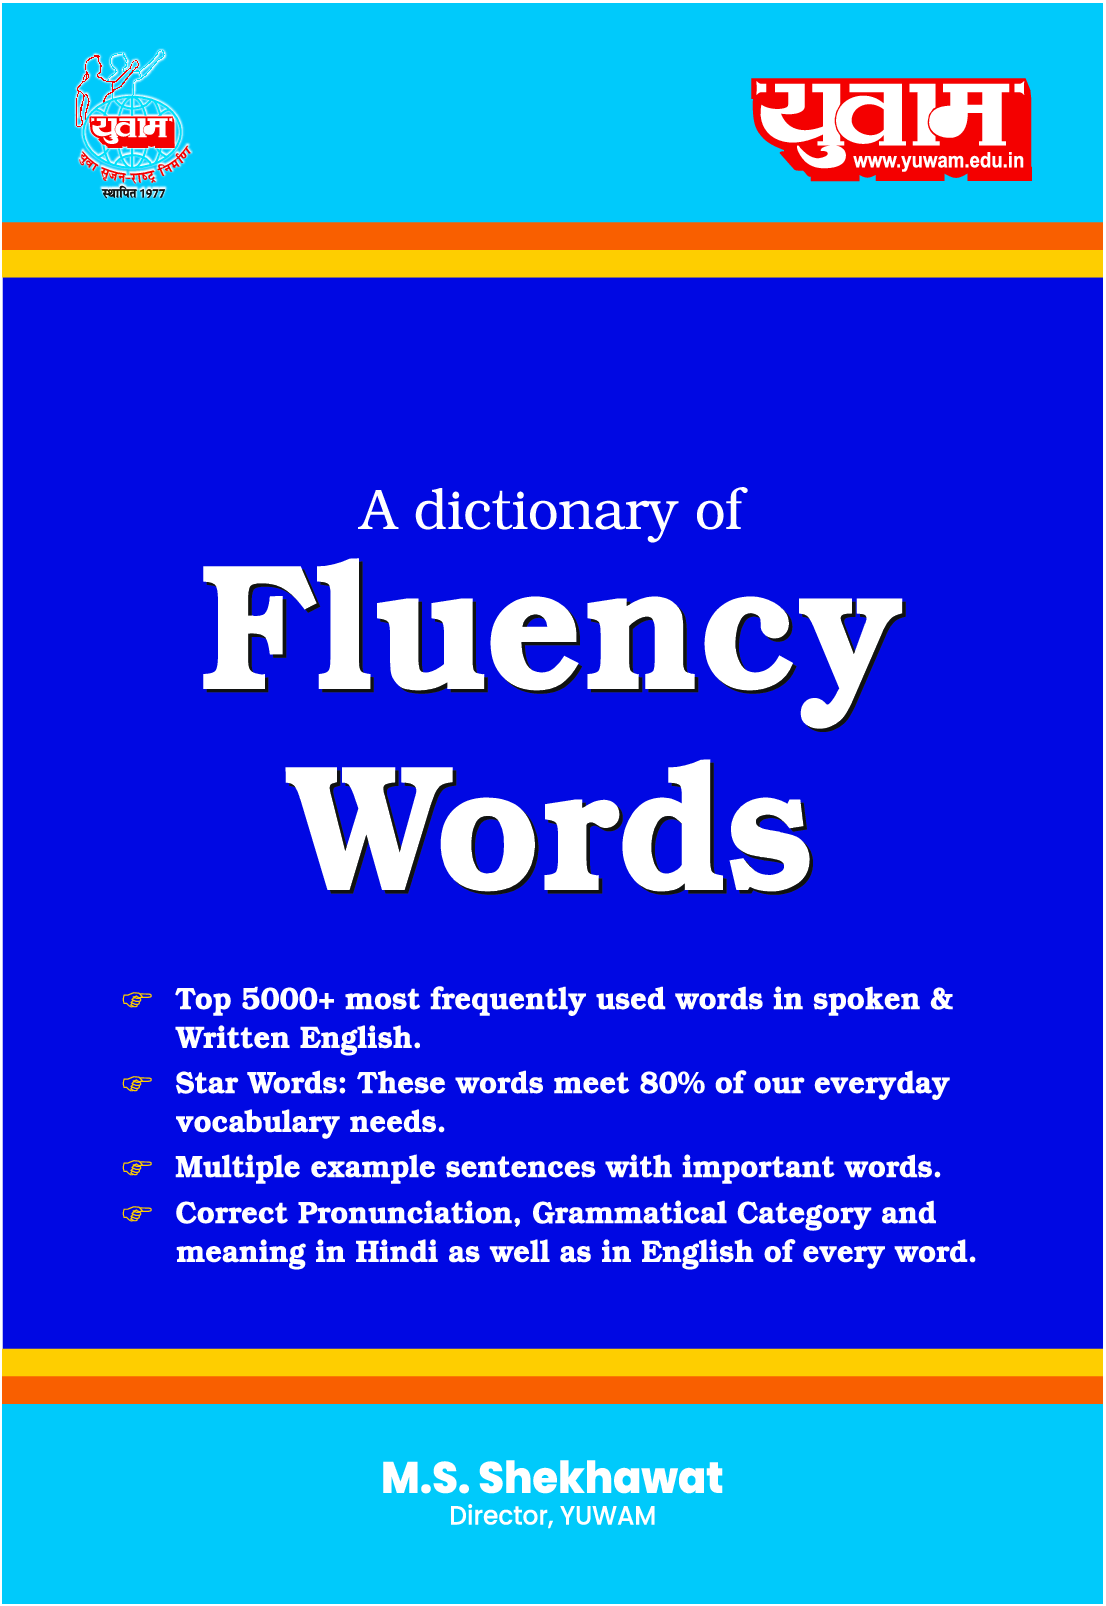 A Mini Dictionary of Fluency Words (E-Book)